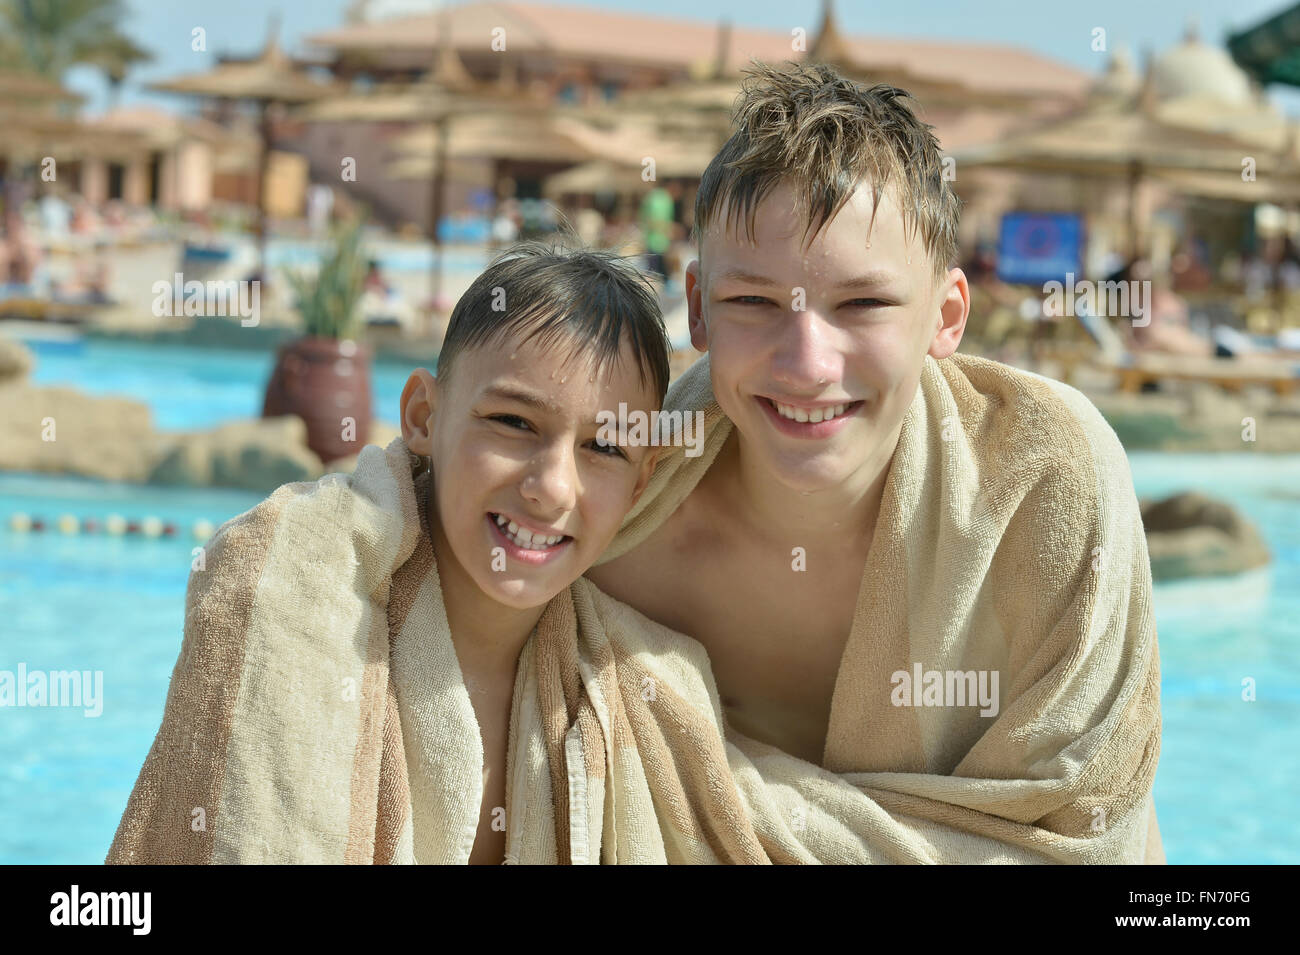 happy boys near the pool Stock Photo